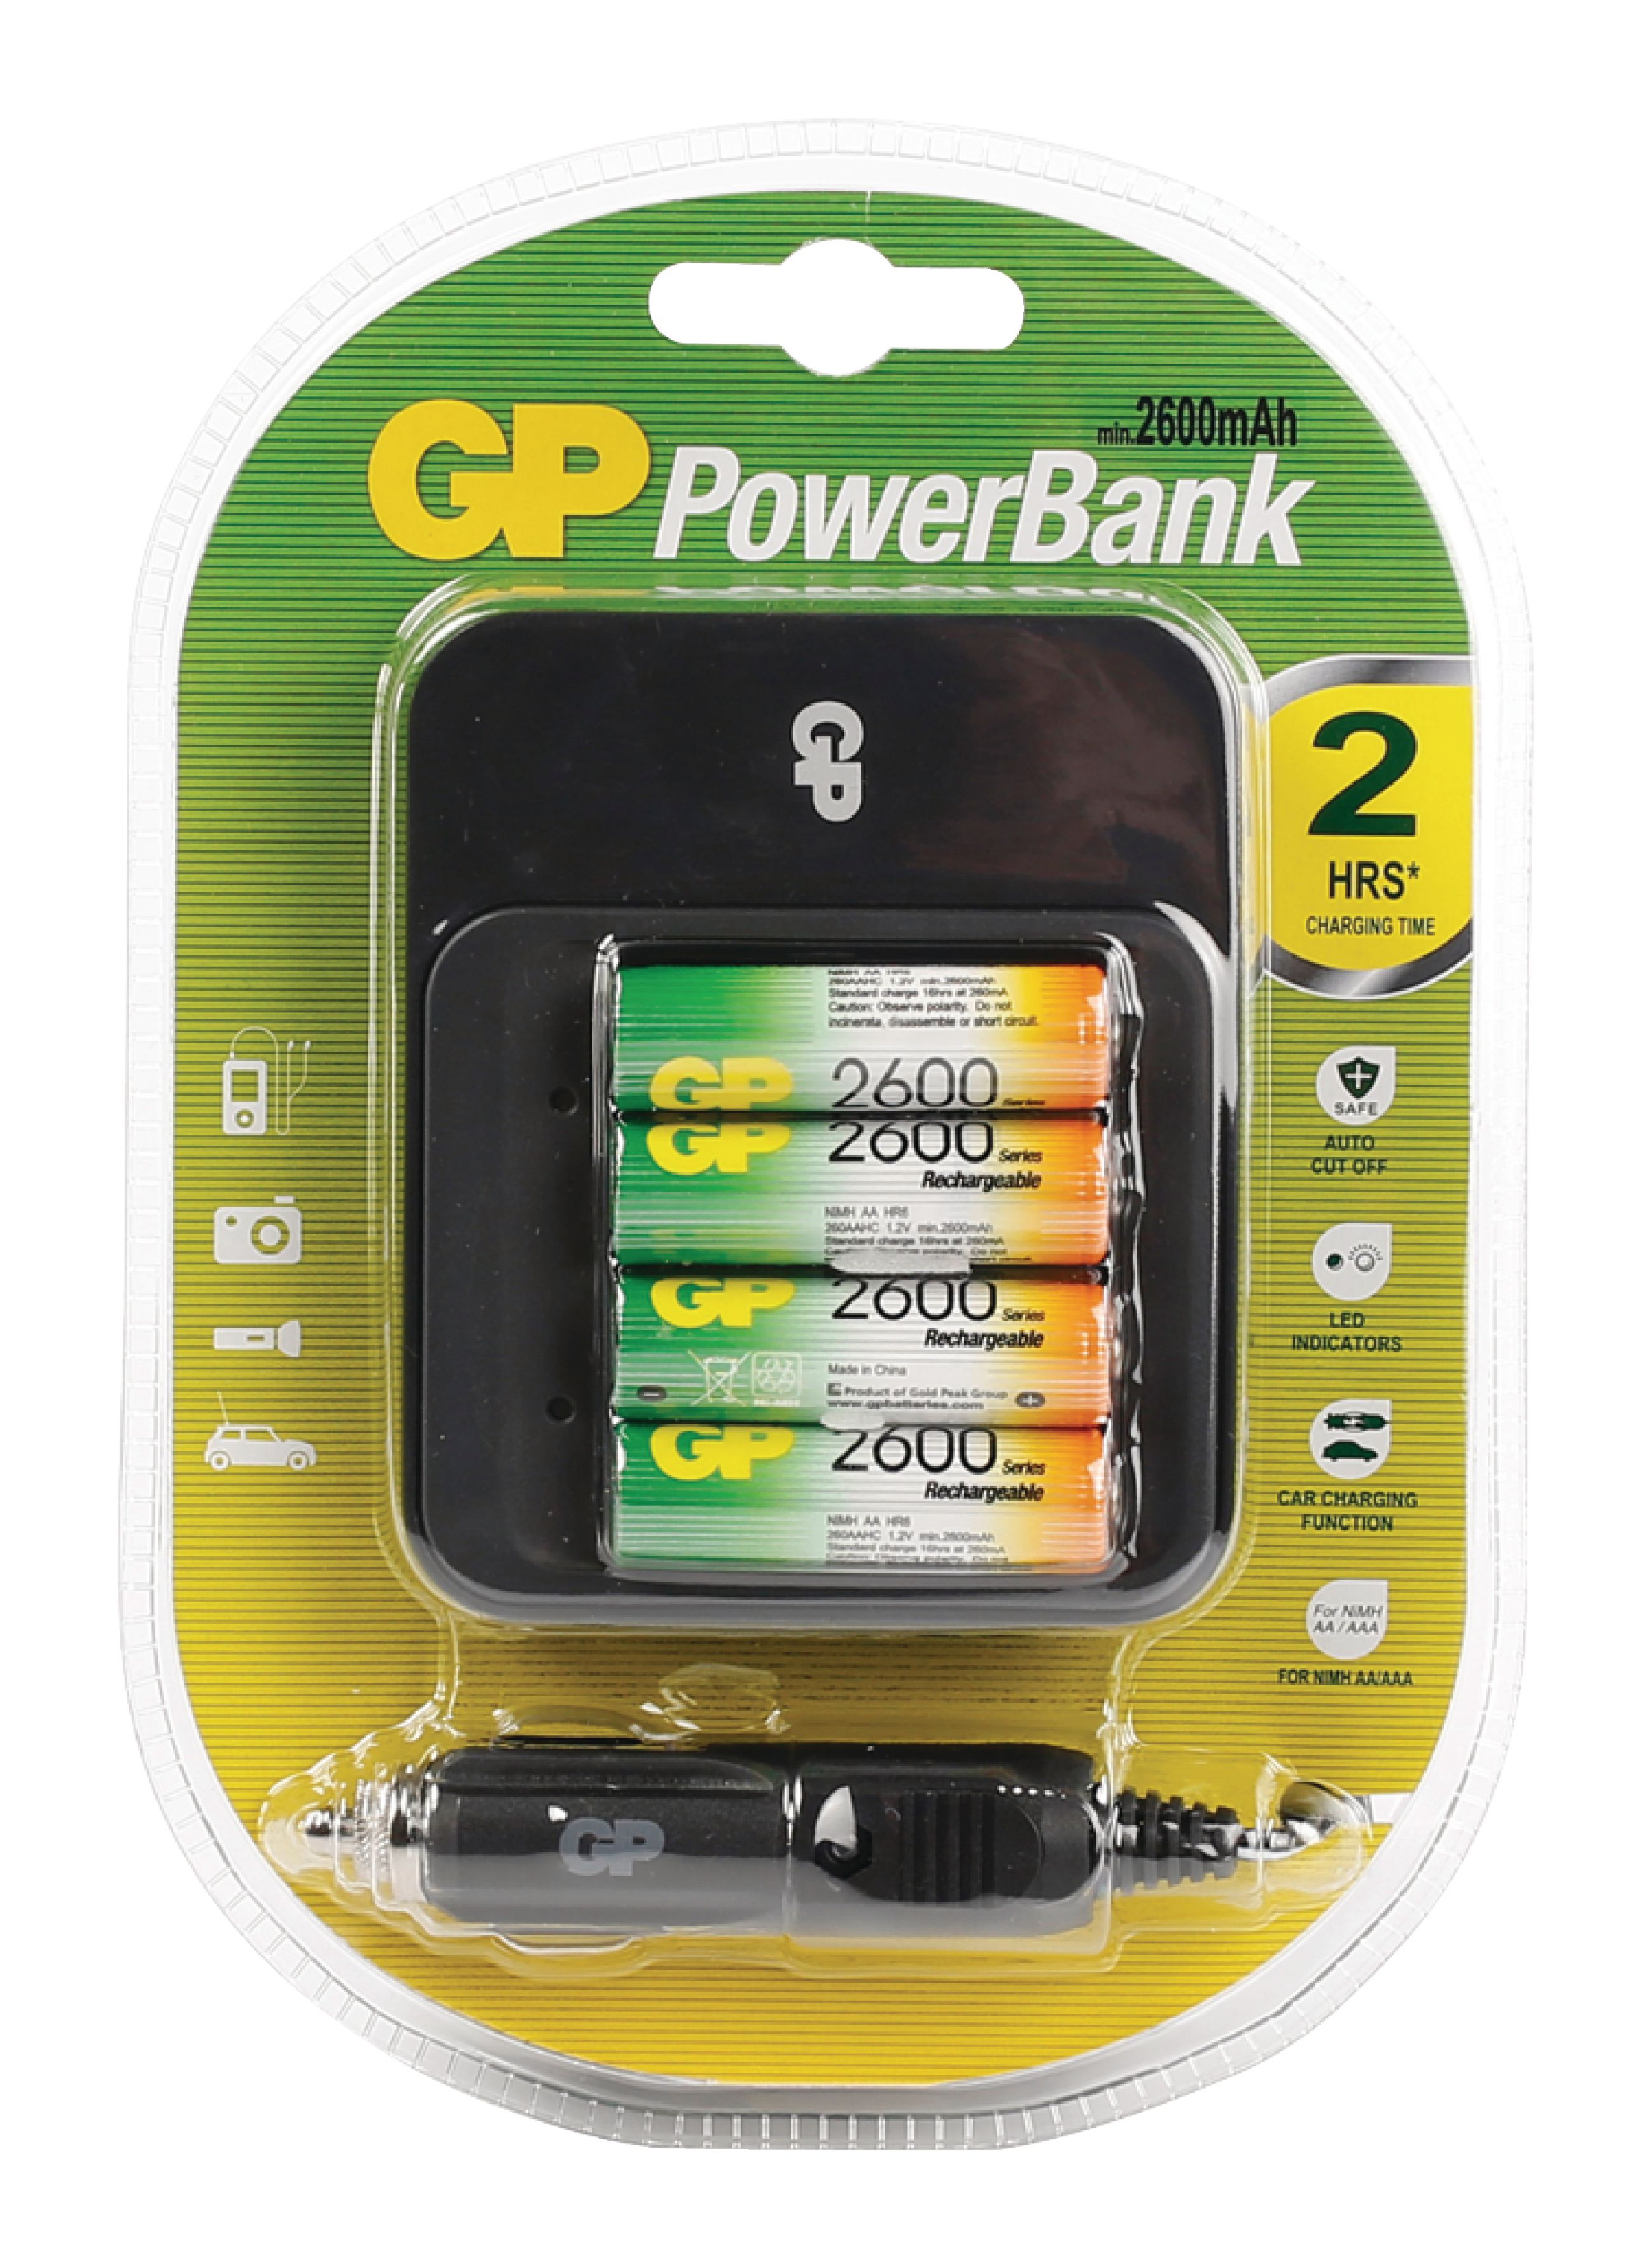 Gp Powerbank Smart 2 User Manual